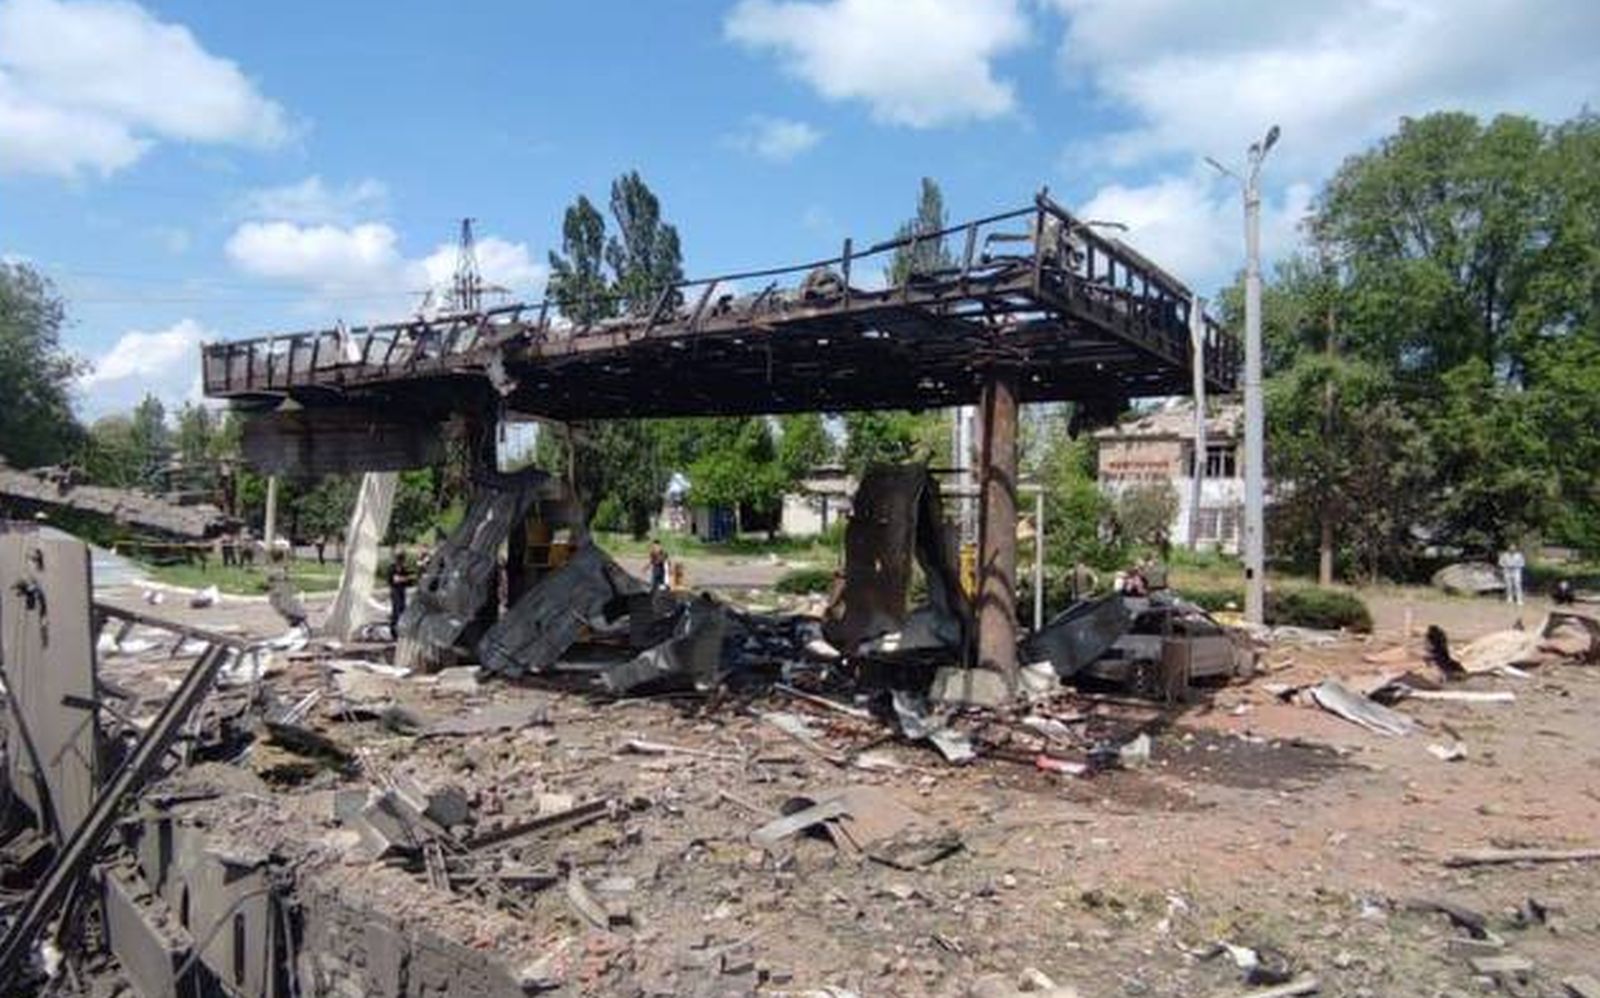 Ρωσικός βομβαρδισμός στο Τορέτσκ – Δύο νεκροί και οκτώ τραυματίες (φώτο)